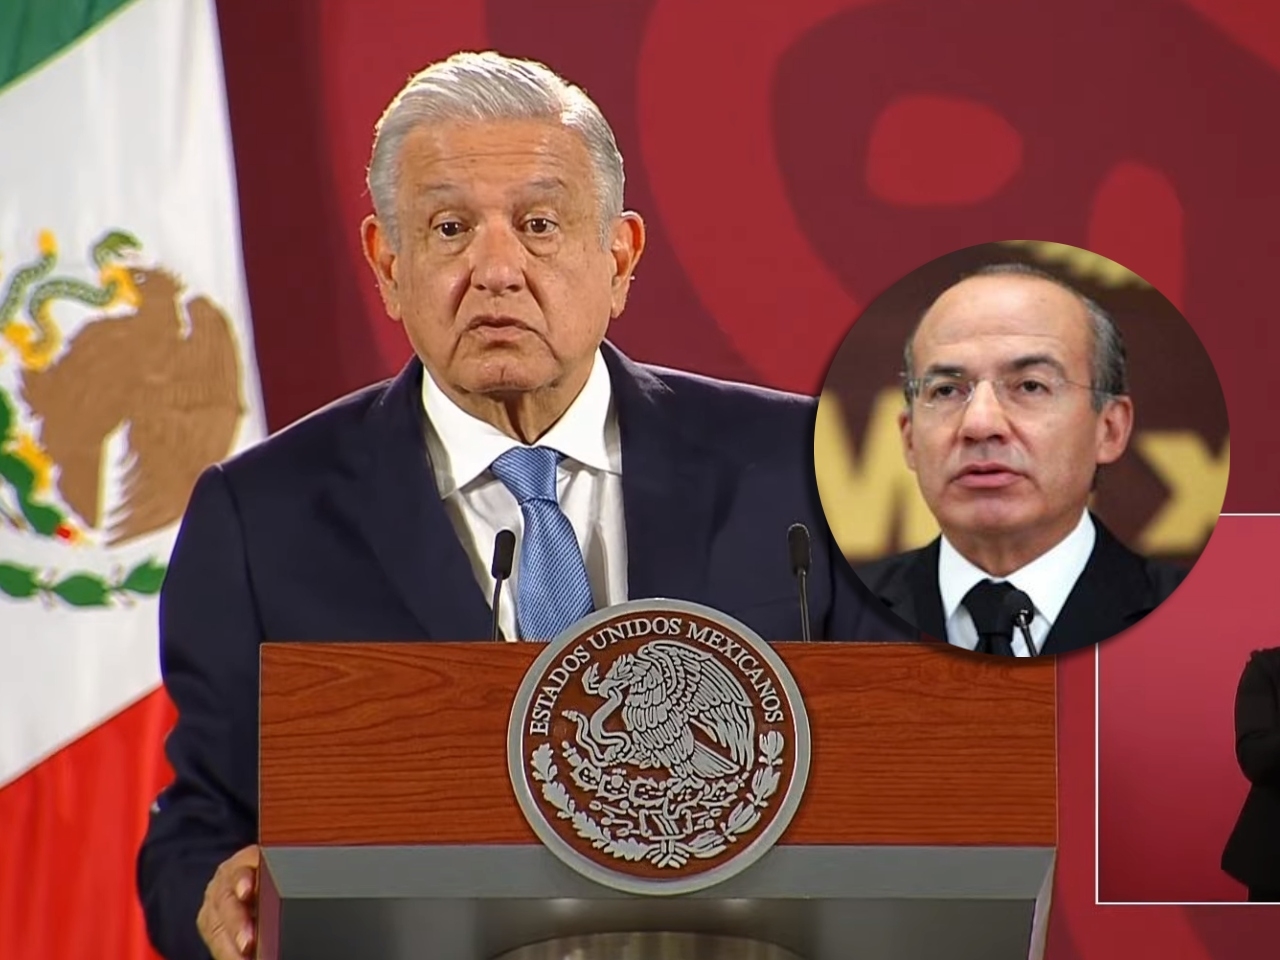 Recibía más que Bush: AMLO revela monto de la pensión de Felipe Calderón